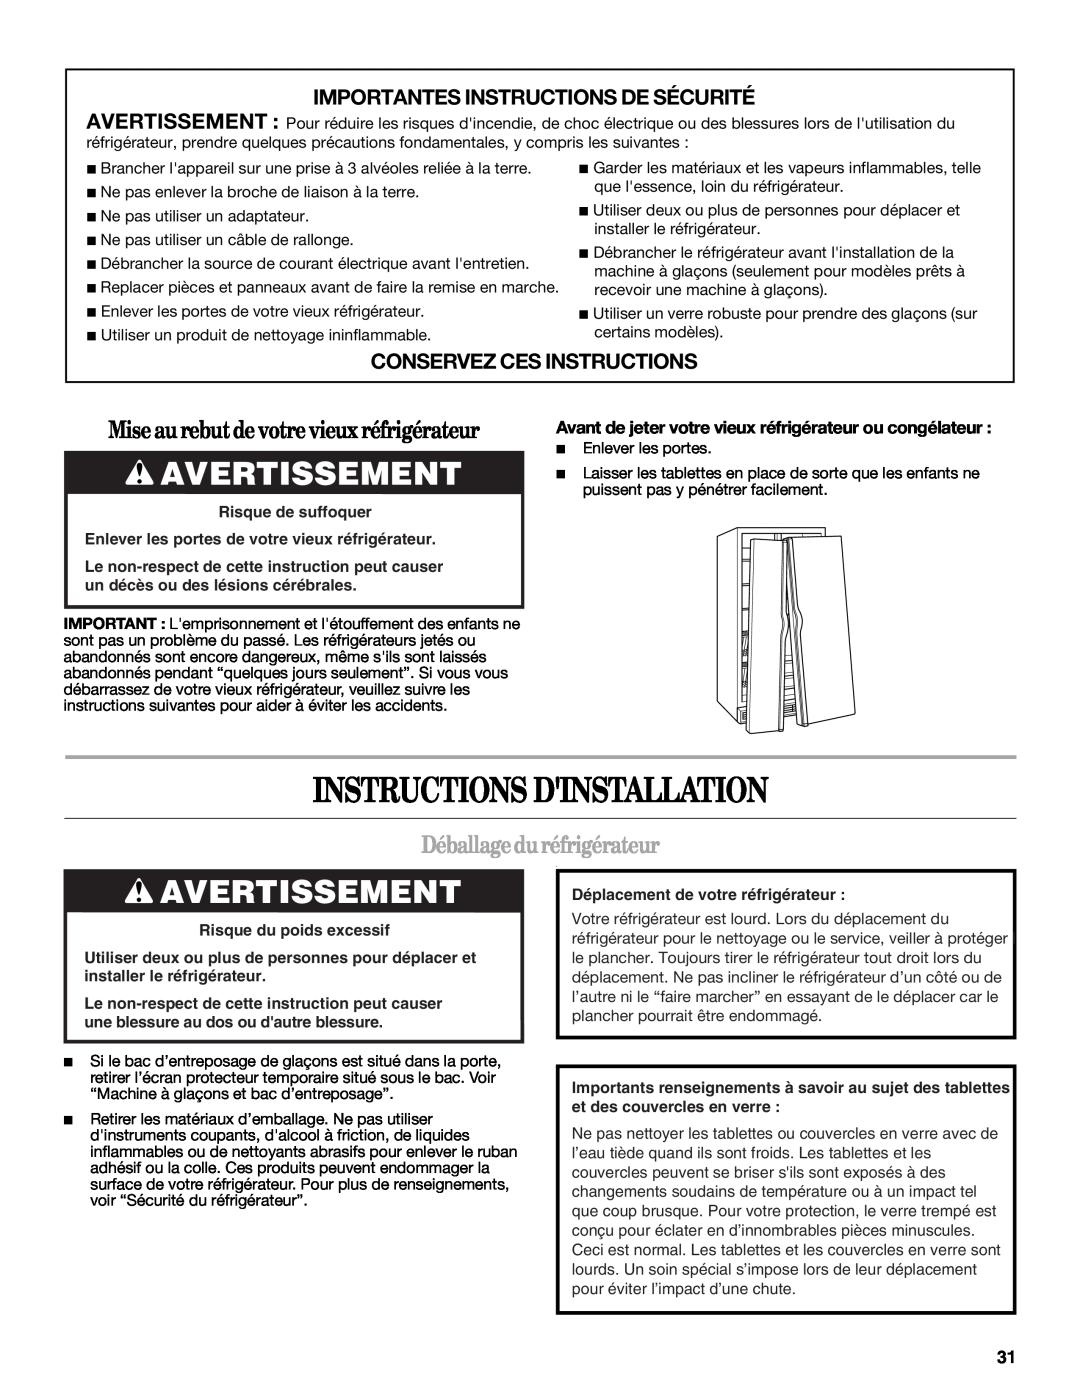 Whirlpool GD5NHAXSB00 warranty Instructions Dinstallation, Avertissement, Miseau rebutdevotrevieuxréfrigérateur 